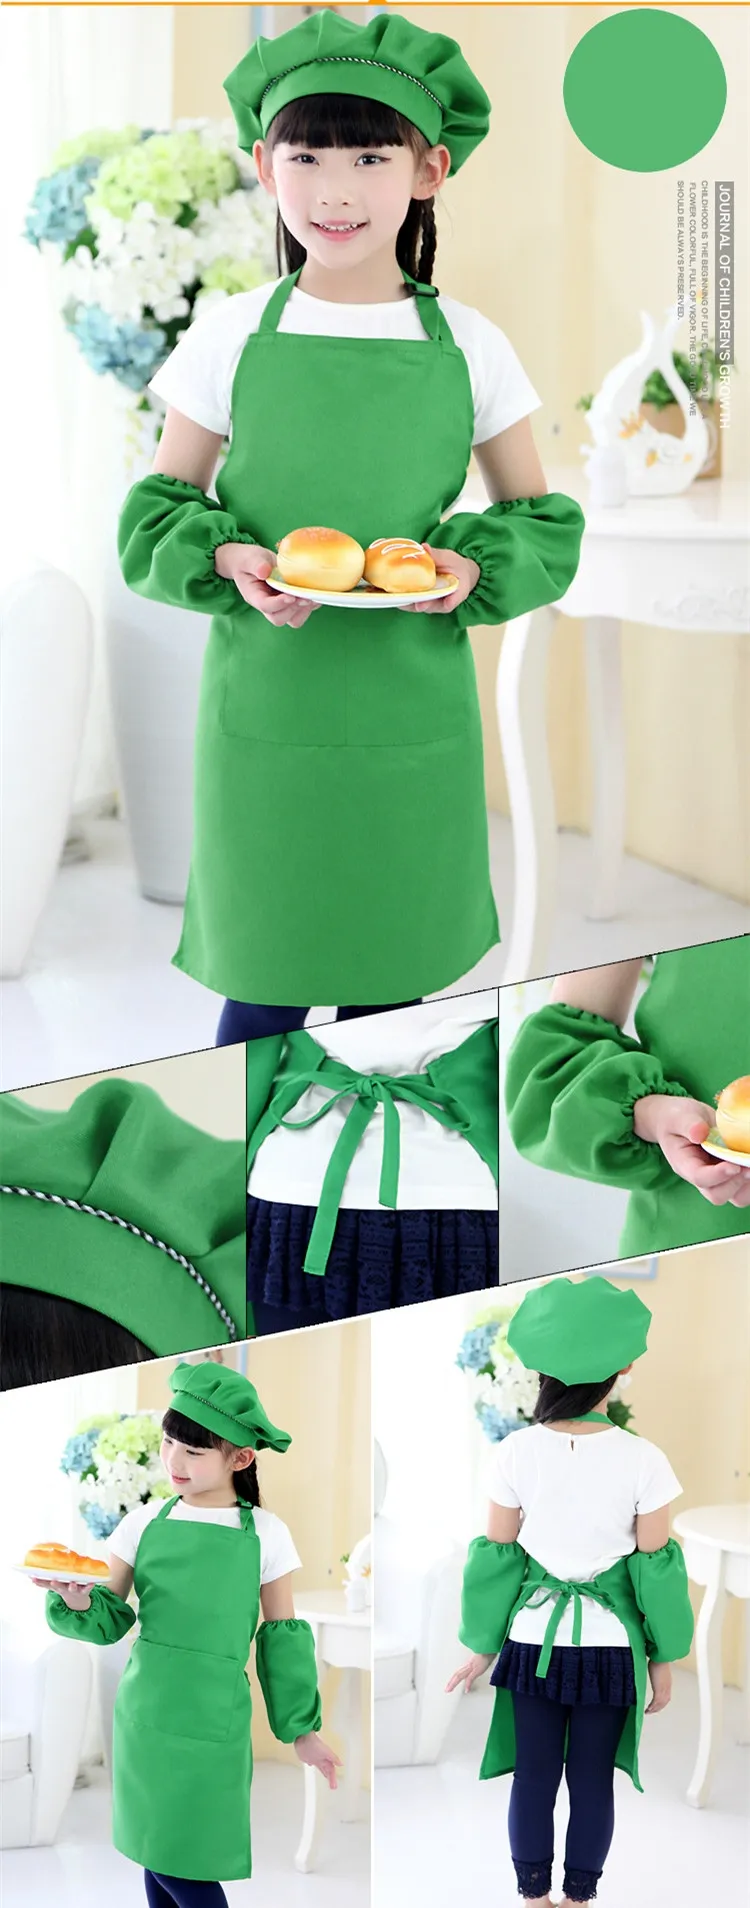 키즈 앞치마 주머니 공예 요리 제빵 아트 페인트 아이 주방 식당 턱받이 아이 미리 모자와 소매 아동 앞치마 어린이 앞치마 10 색